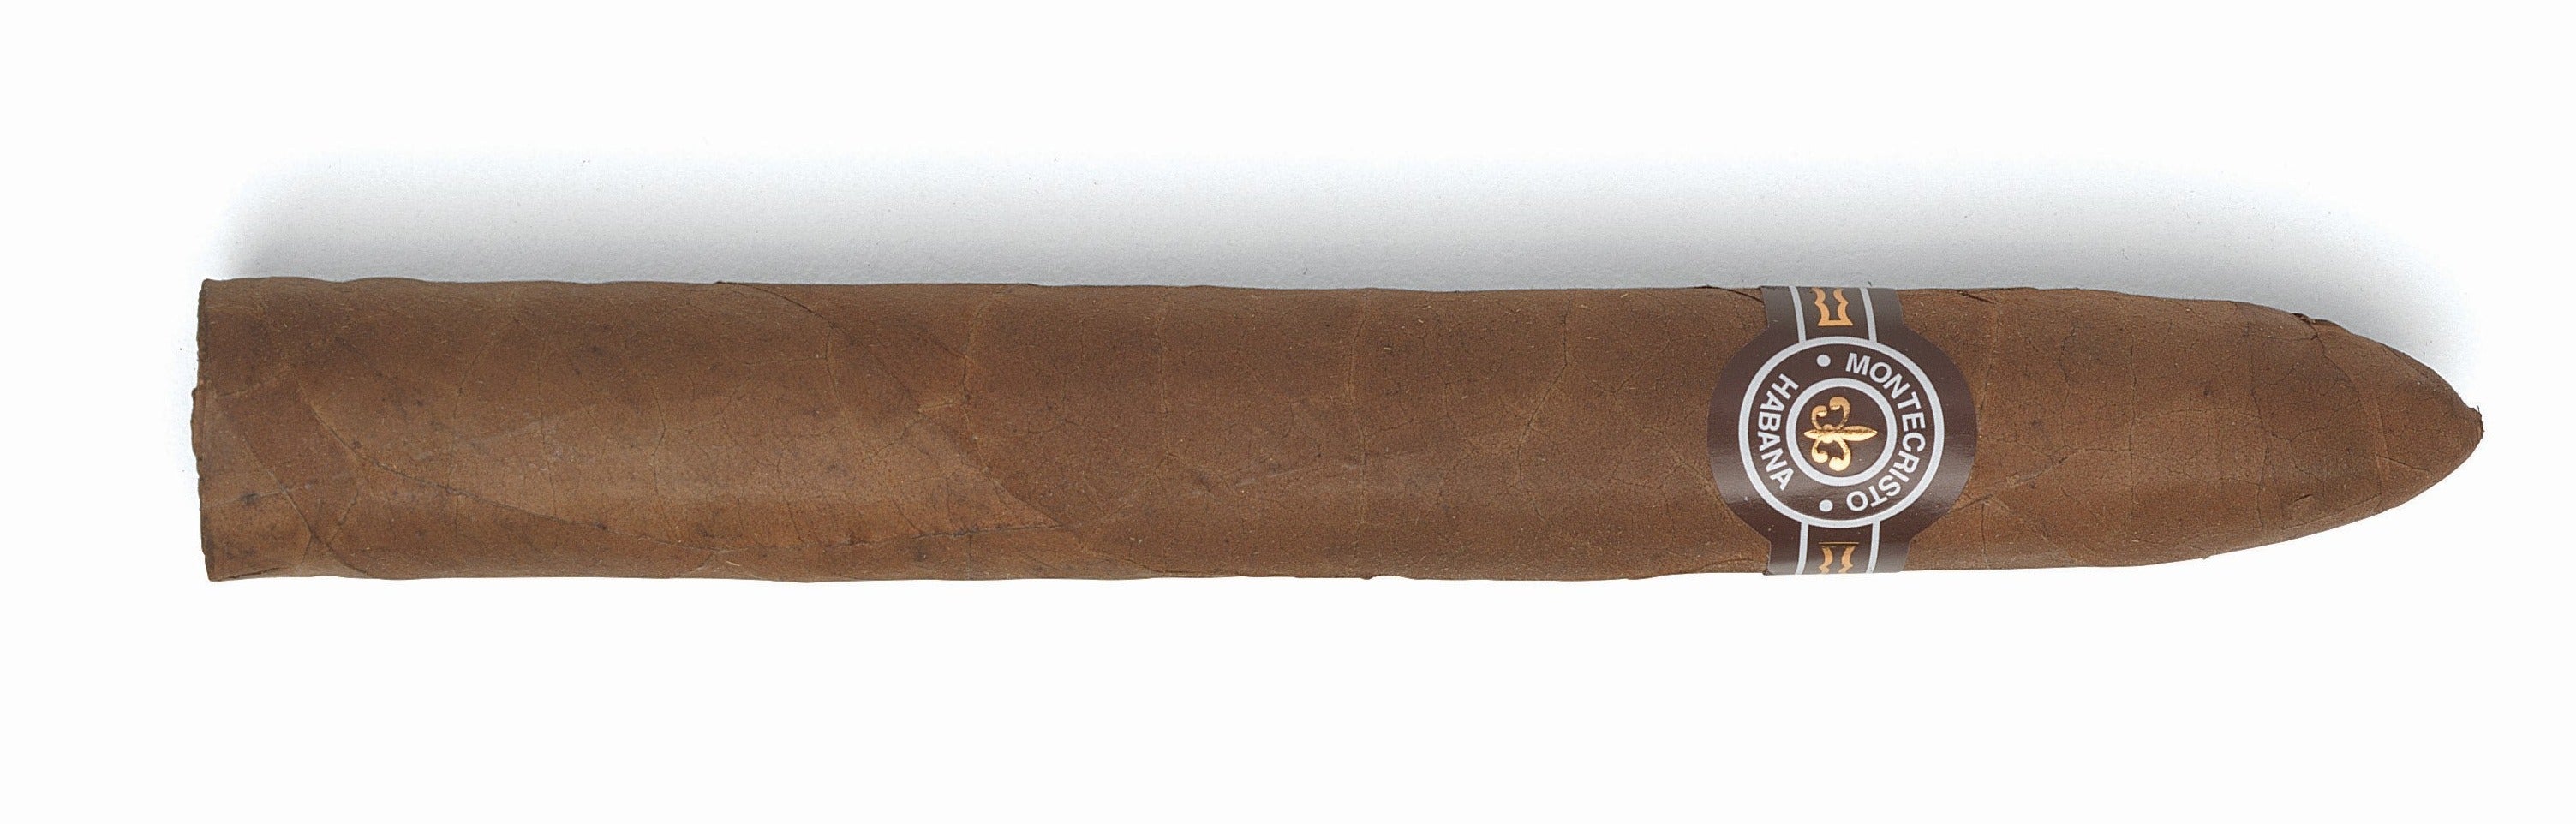 Montecristo No 2 Cuban Cigar